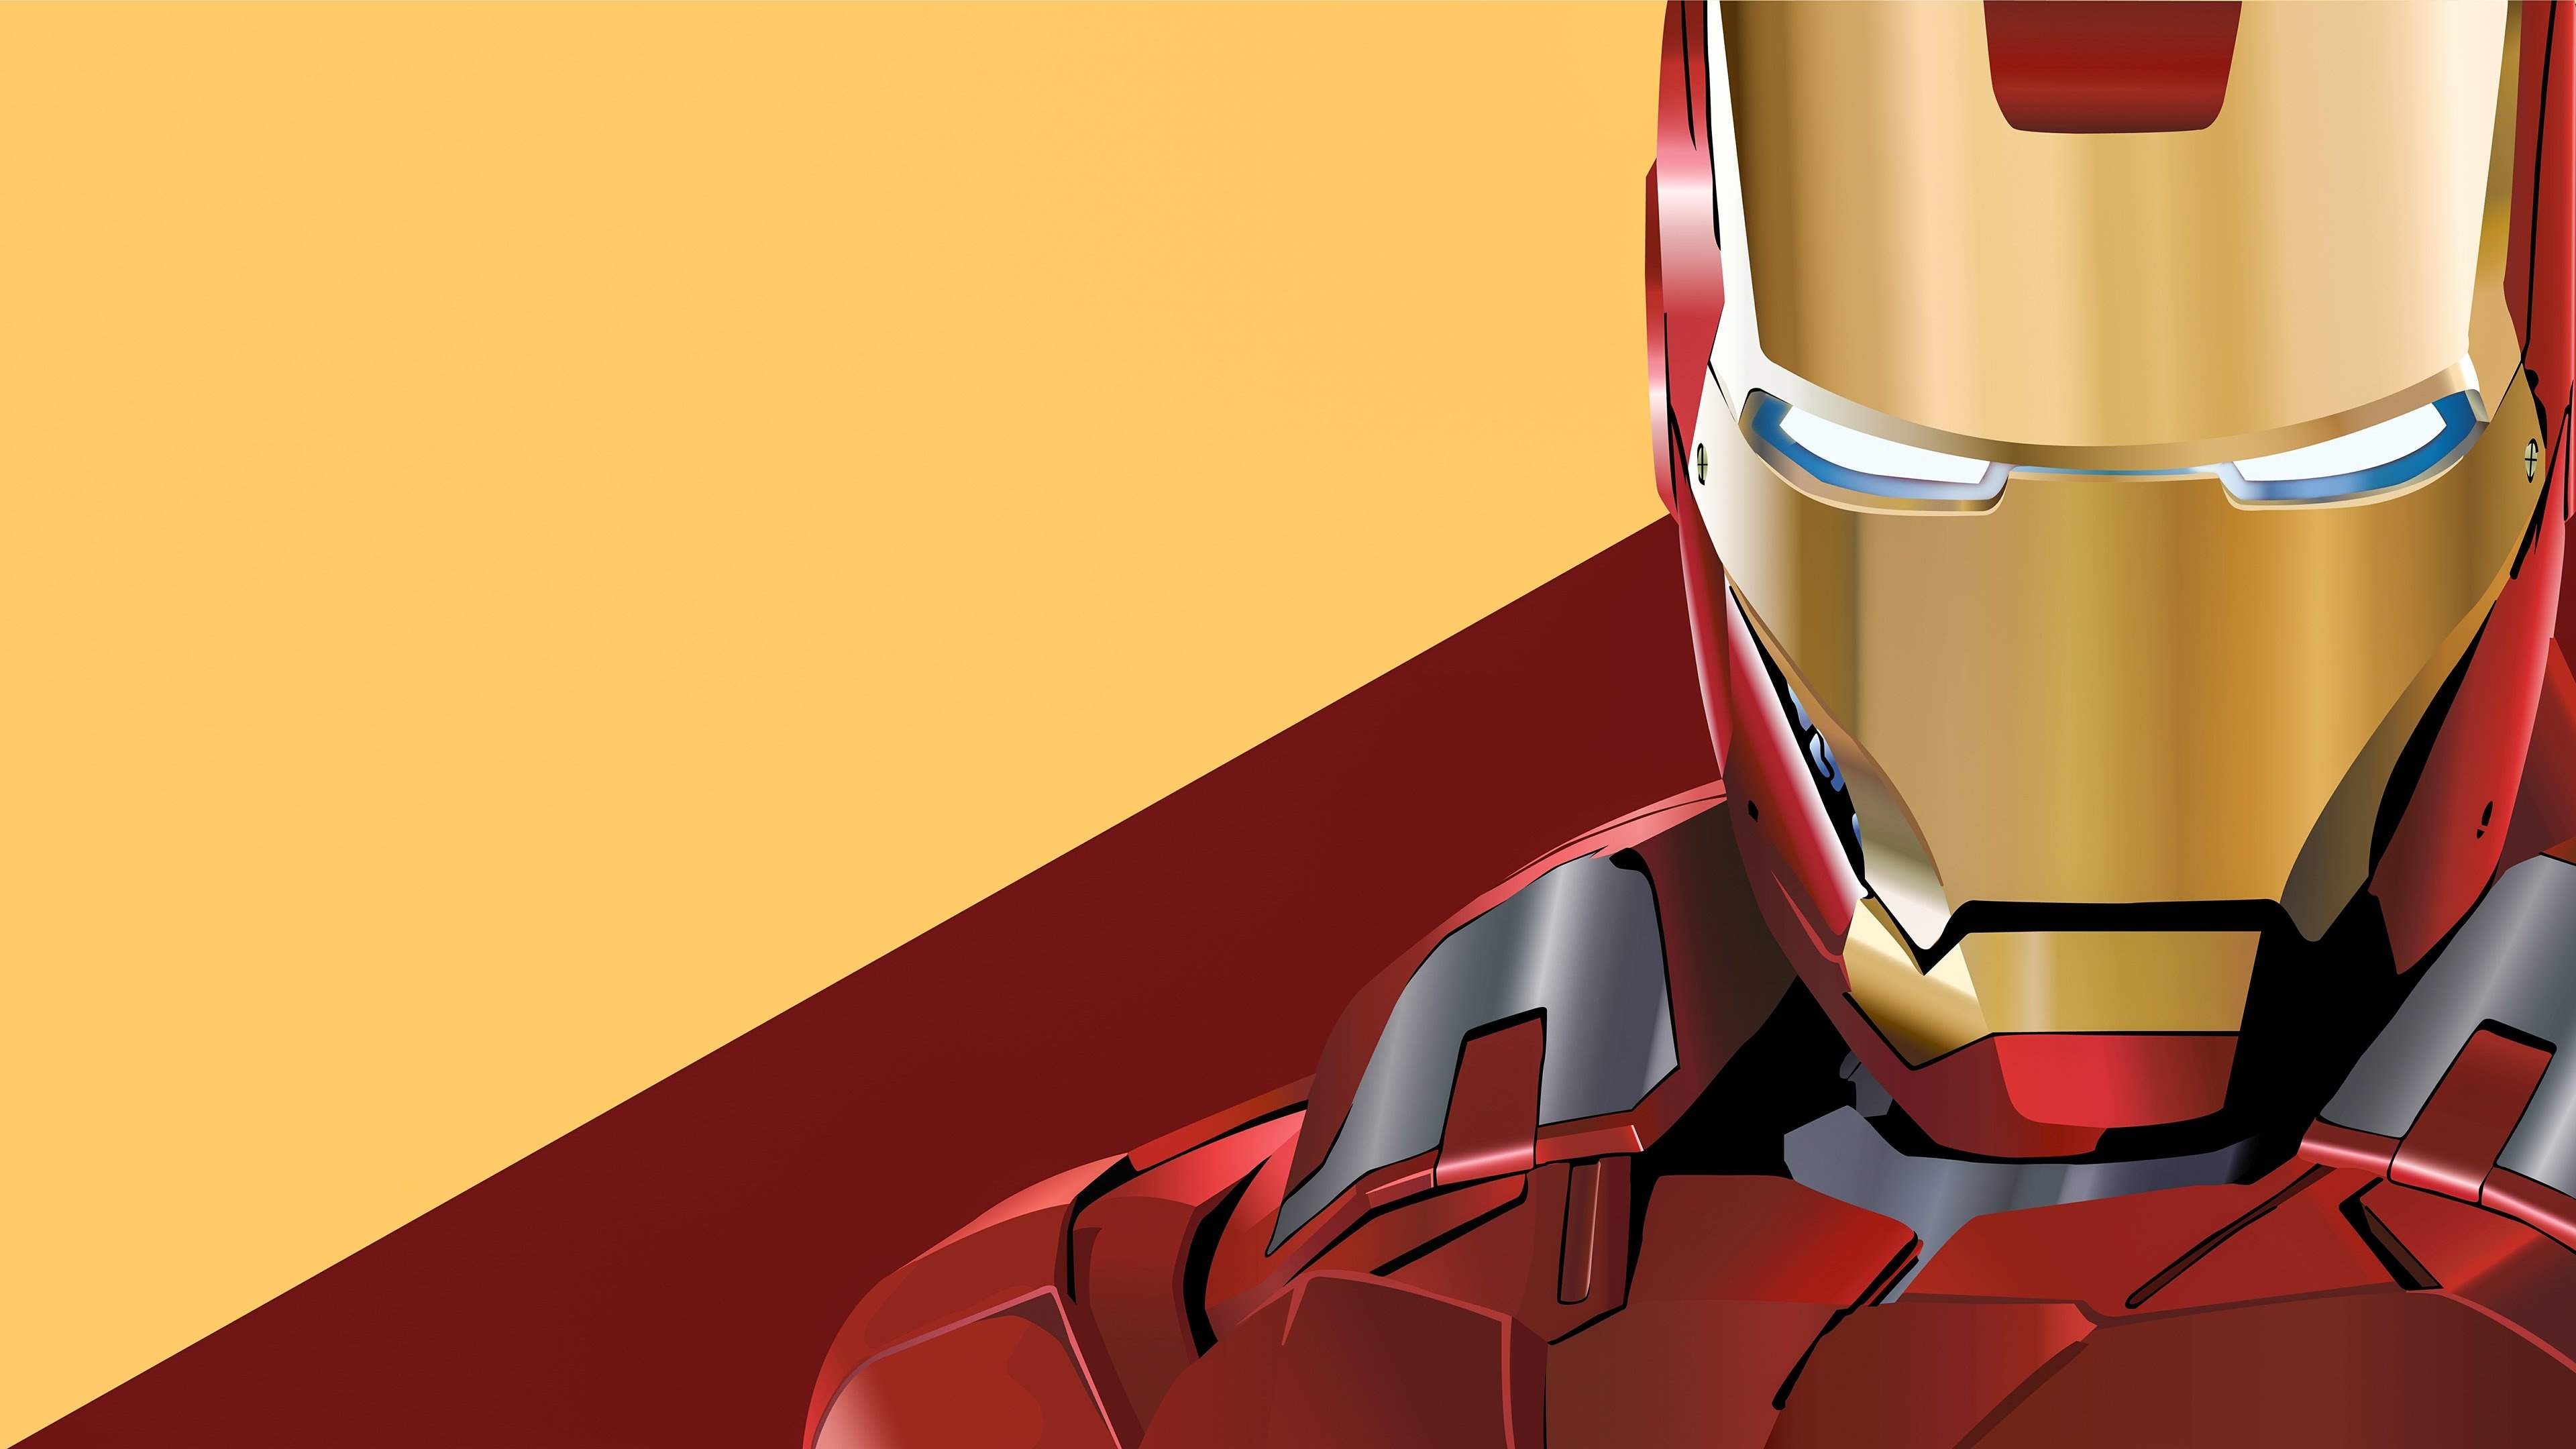 Iron Man, 4K Ultra HD, Desktop wallpaper, High-definition imagery, 3840x2160 4K Desktop